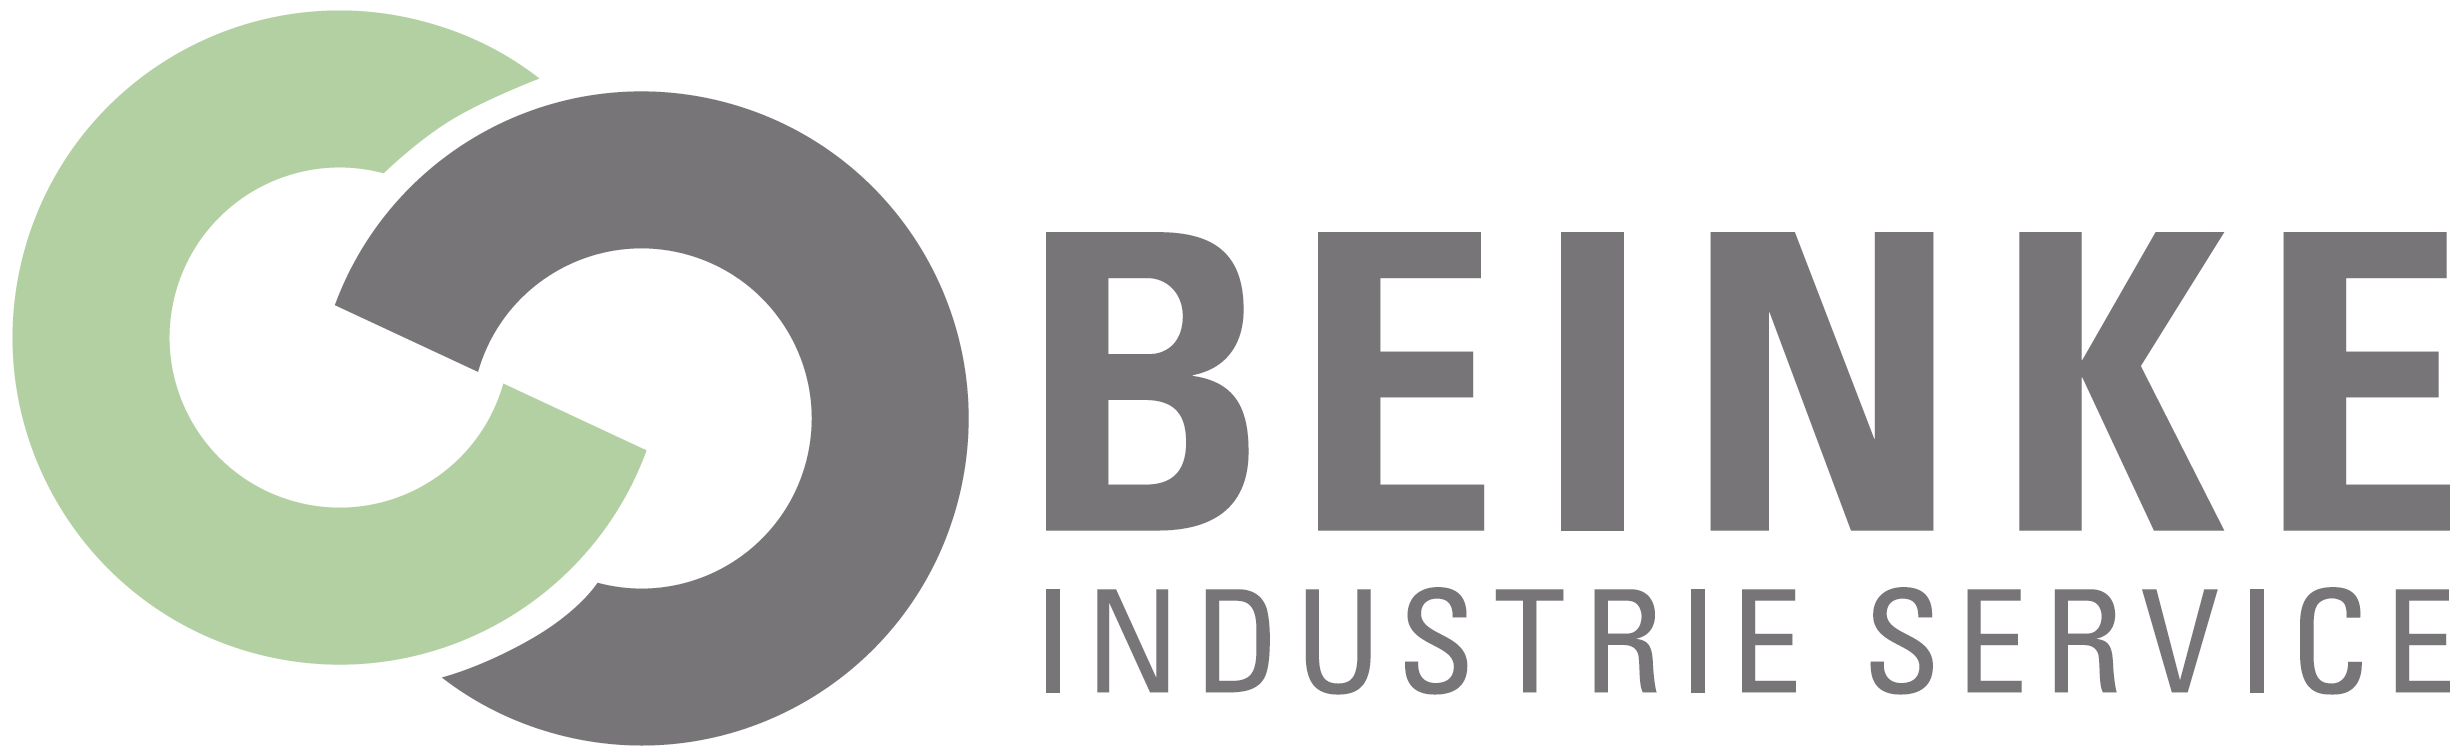 Logo: Beinke-Industrie-Service GmbH & Co. KG